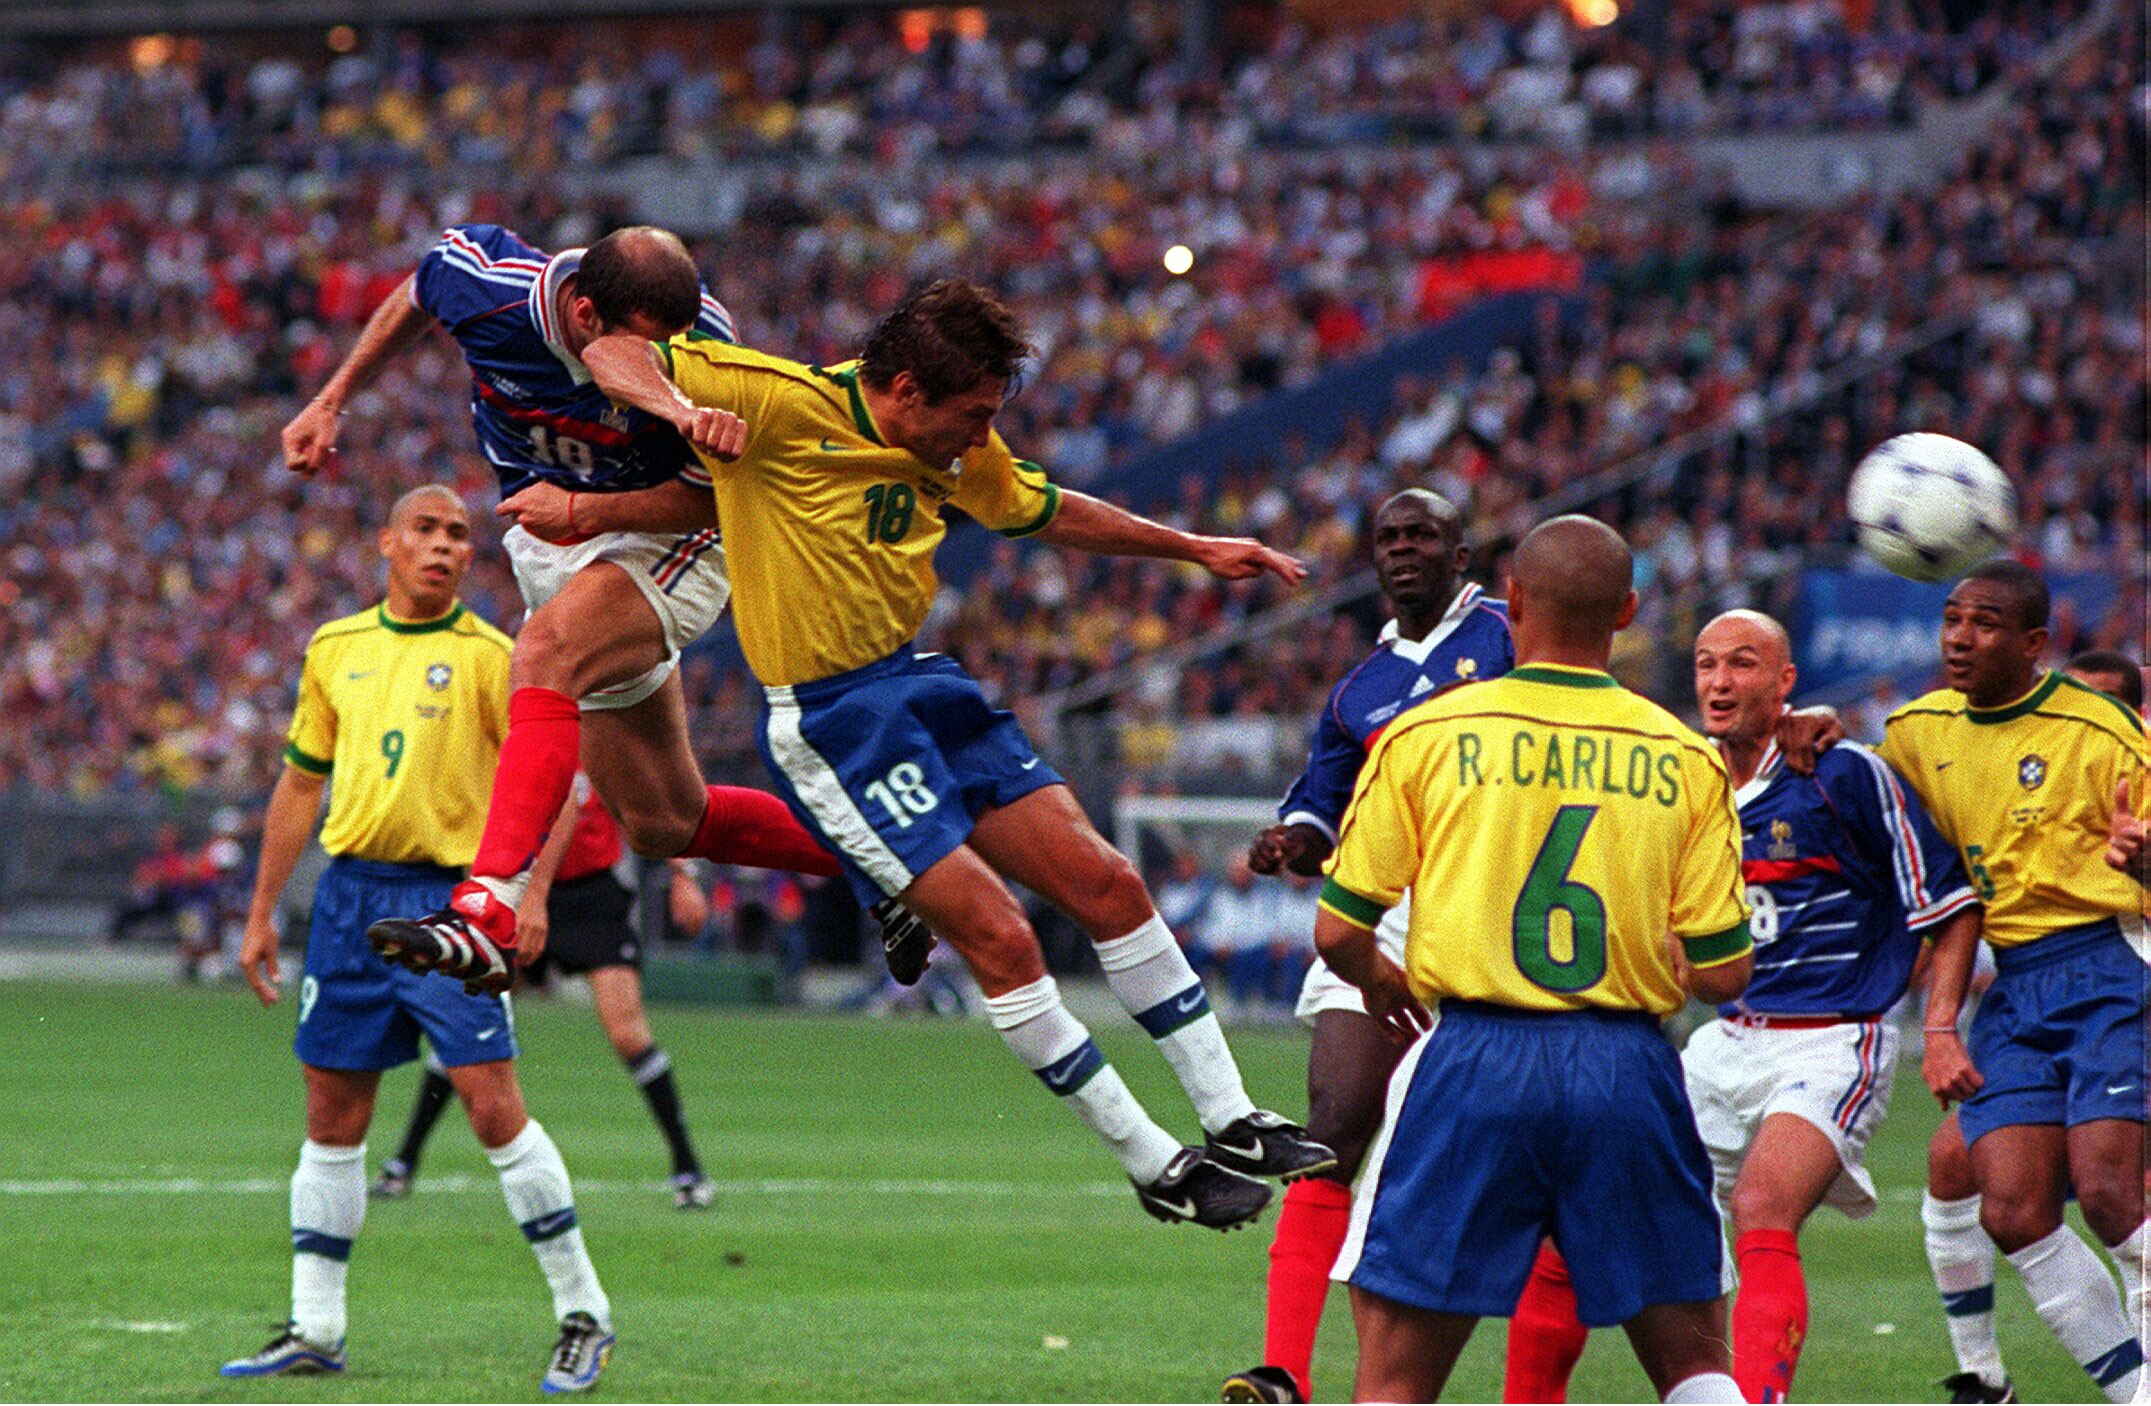 Zinedine Zidane postiže gol u finalu Svjetskog prvenstva 1998. u kojem je Francuska svladala Brazil s 3:0 (John Sibley / Action Images)